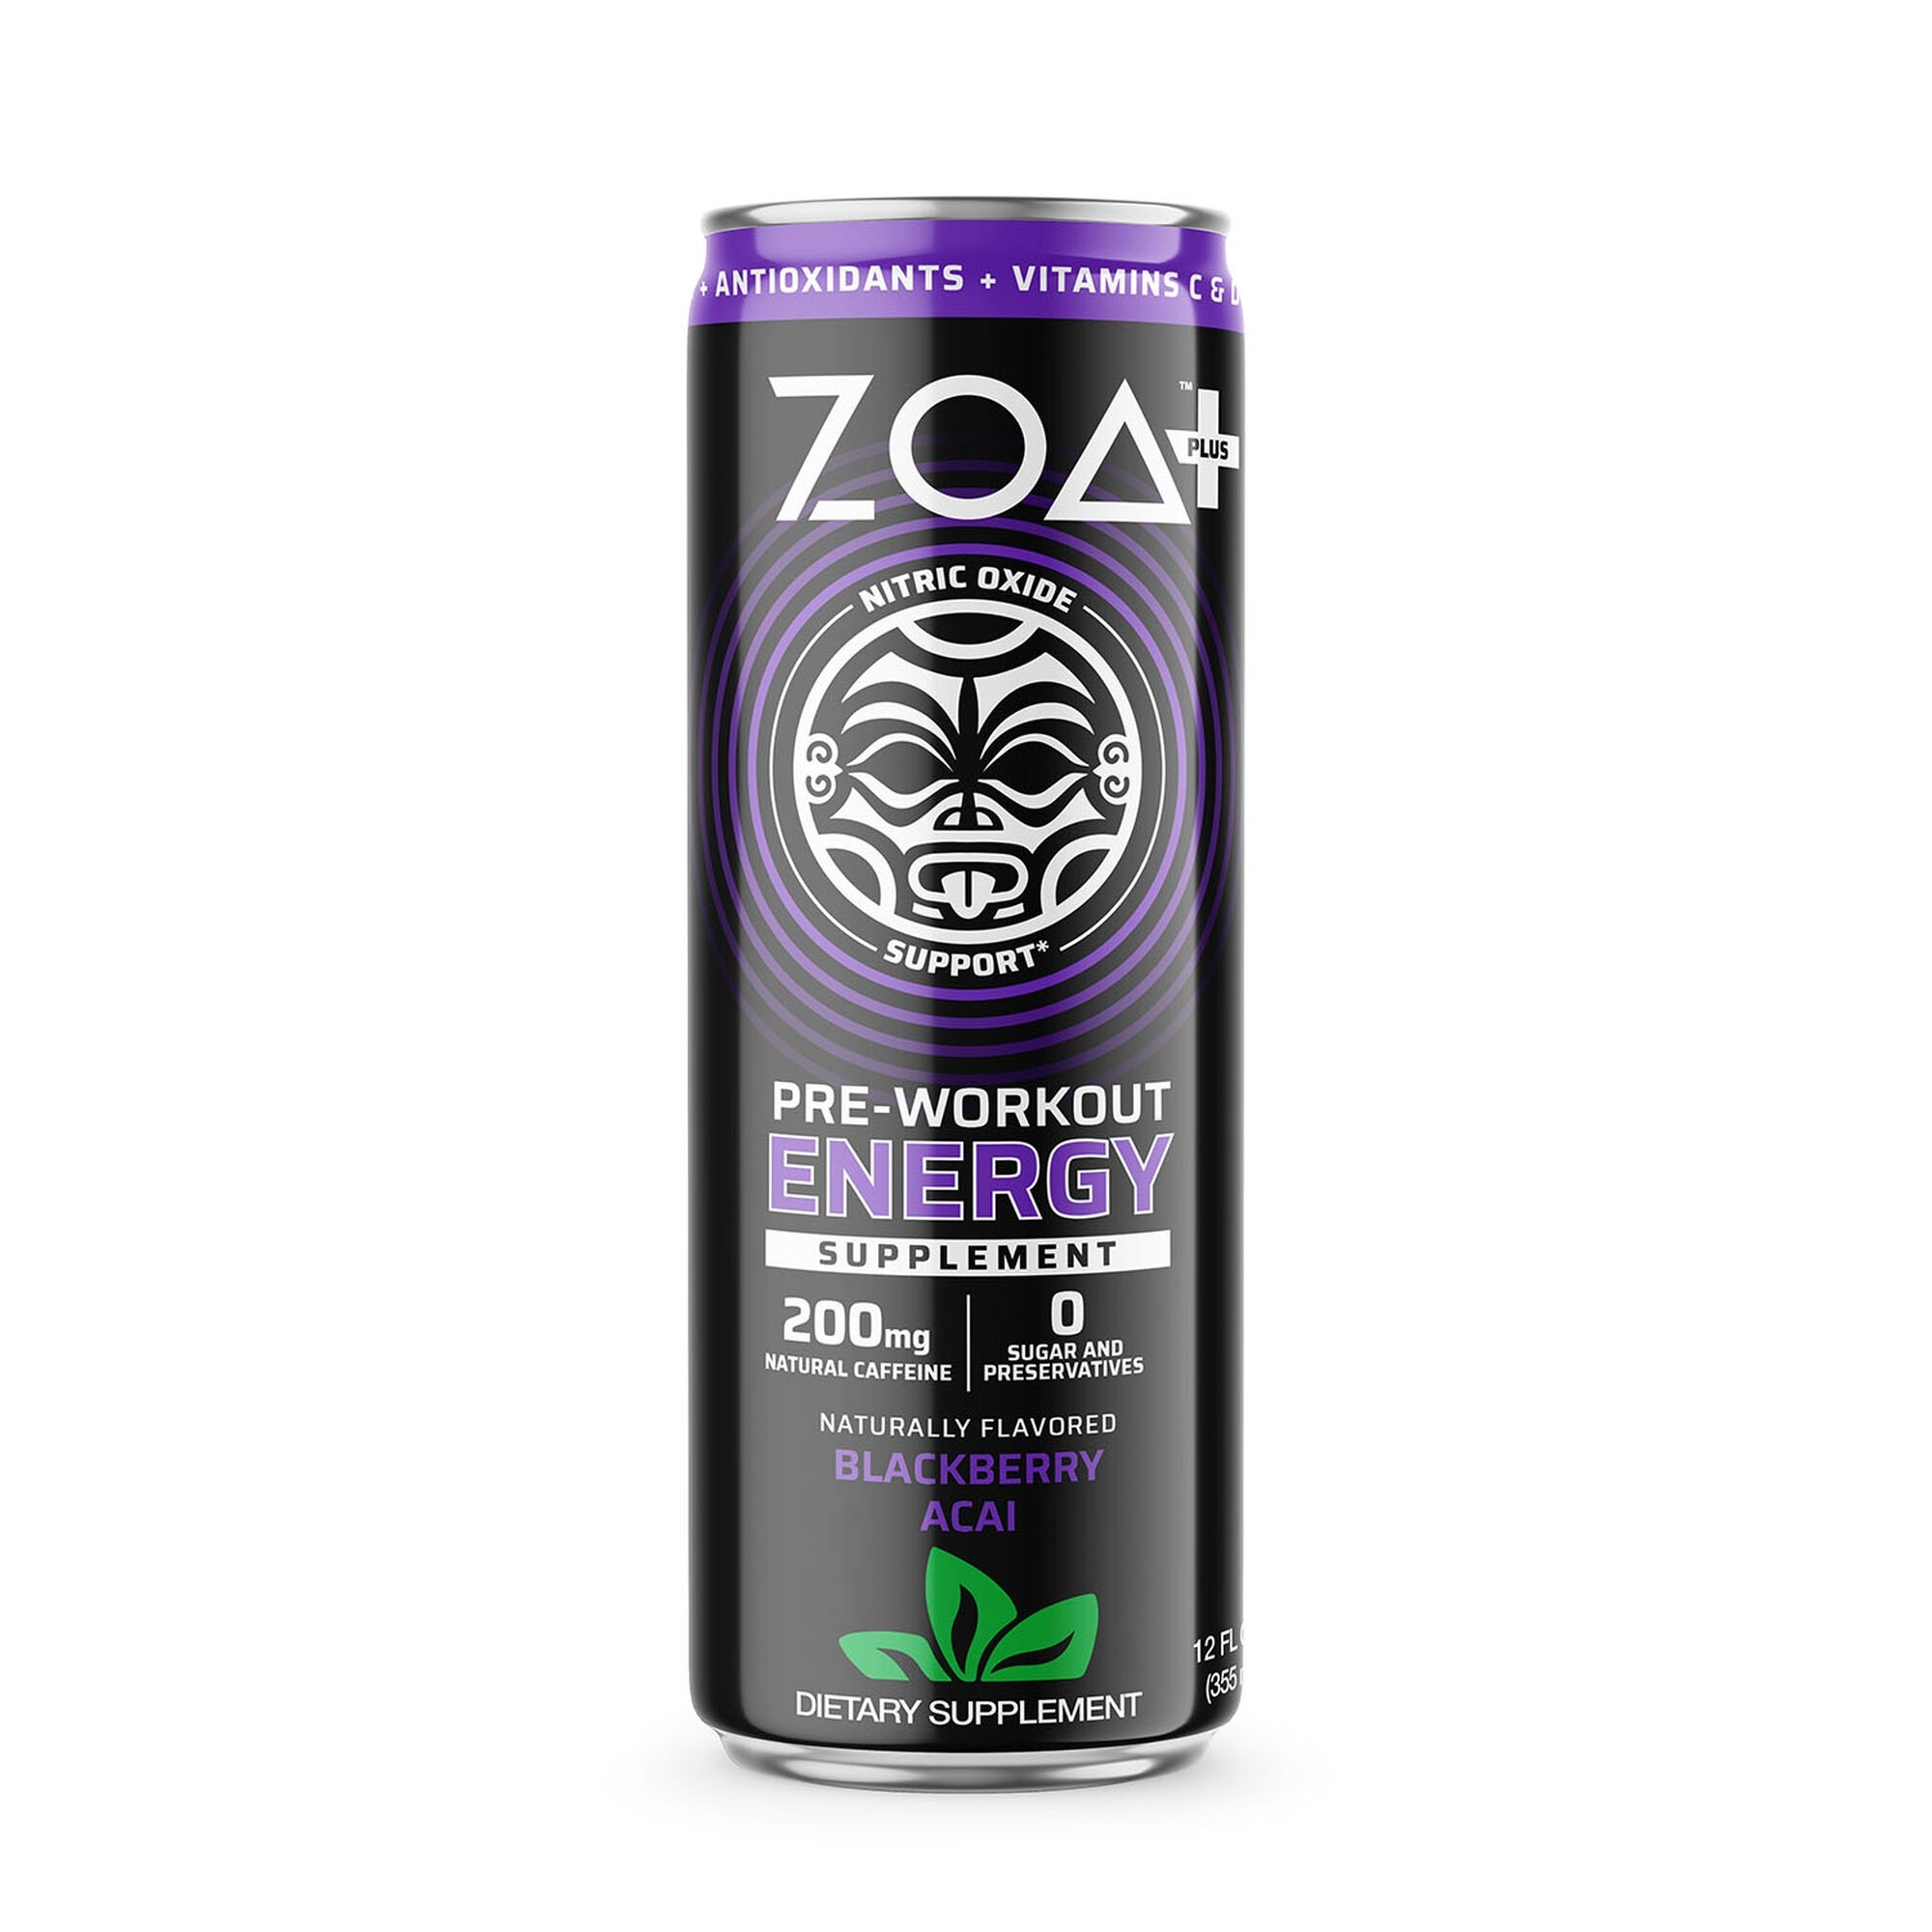 Preparate pentru efort (creșterea nivelului energetic) - ZOA+ Pre-Workout Energy Drink, bautura energizanta pre-antrenament cu aroma de mure acai, 355 ml, GNC, farmaciamare.ro